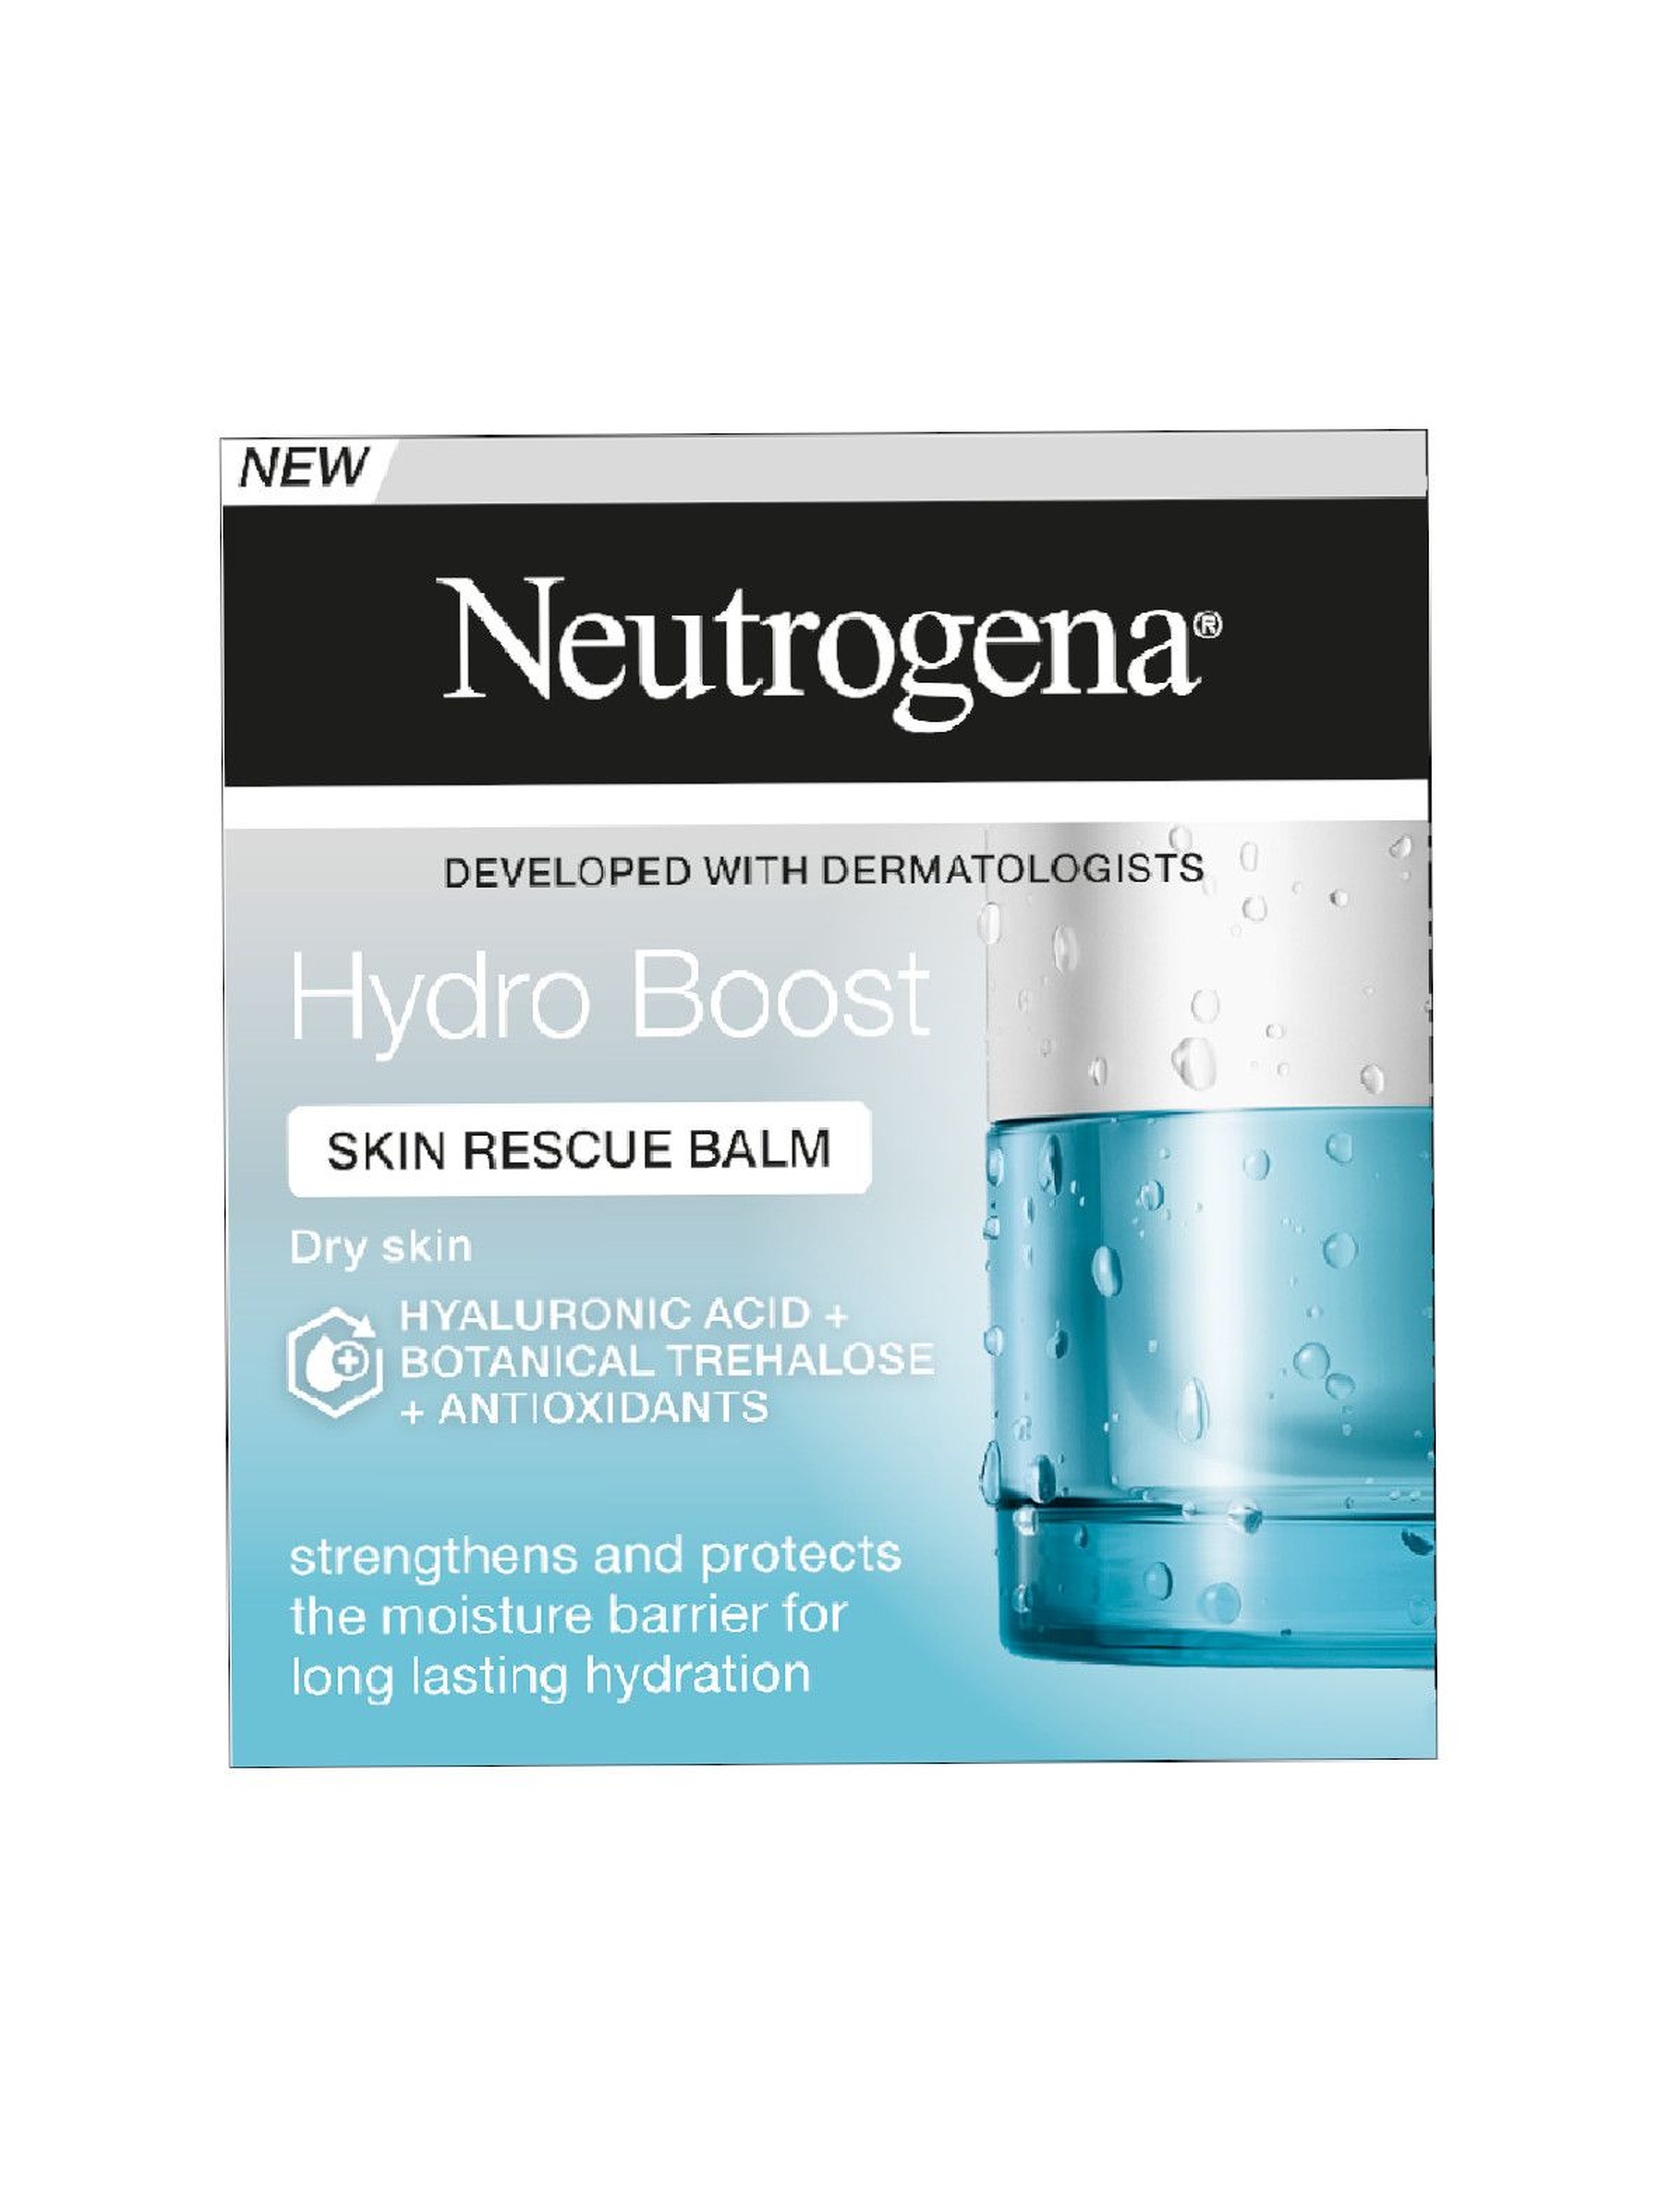 Neutrogena Hydro Boost Skin Rescue Balm Balsam Regenerujący Skórę 50ml